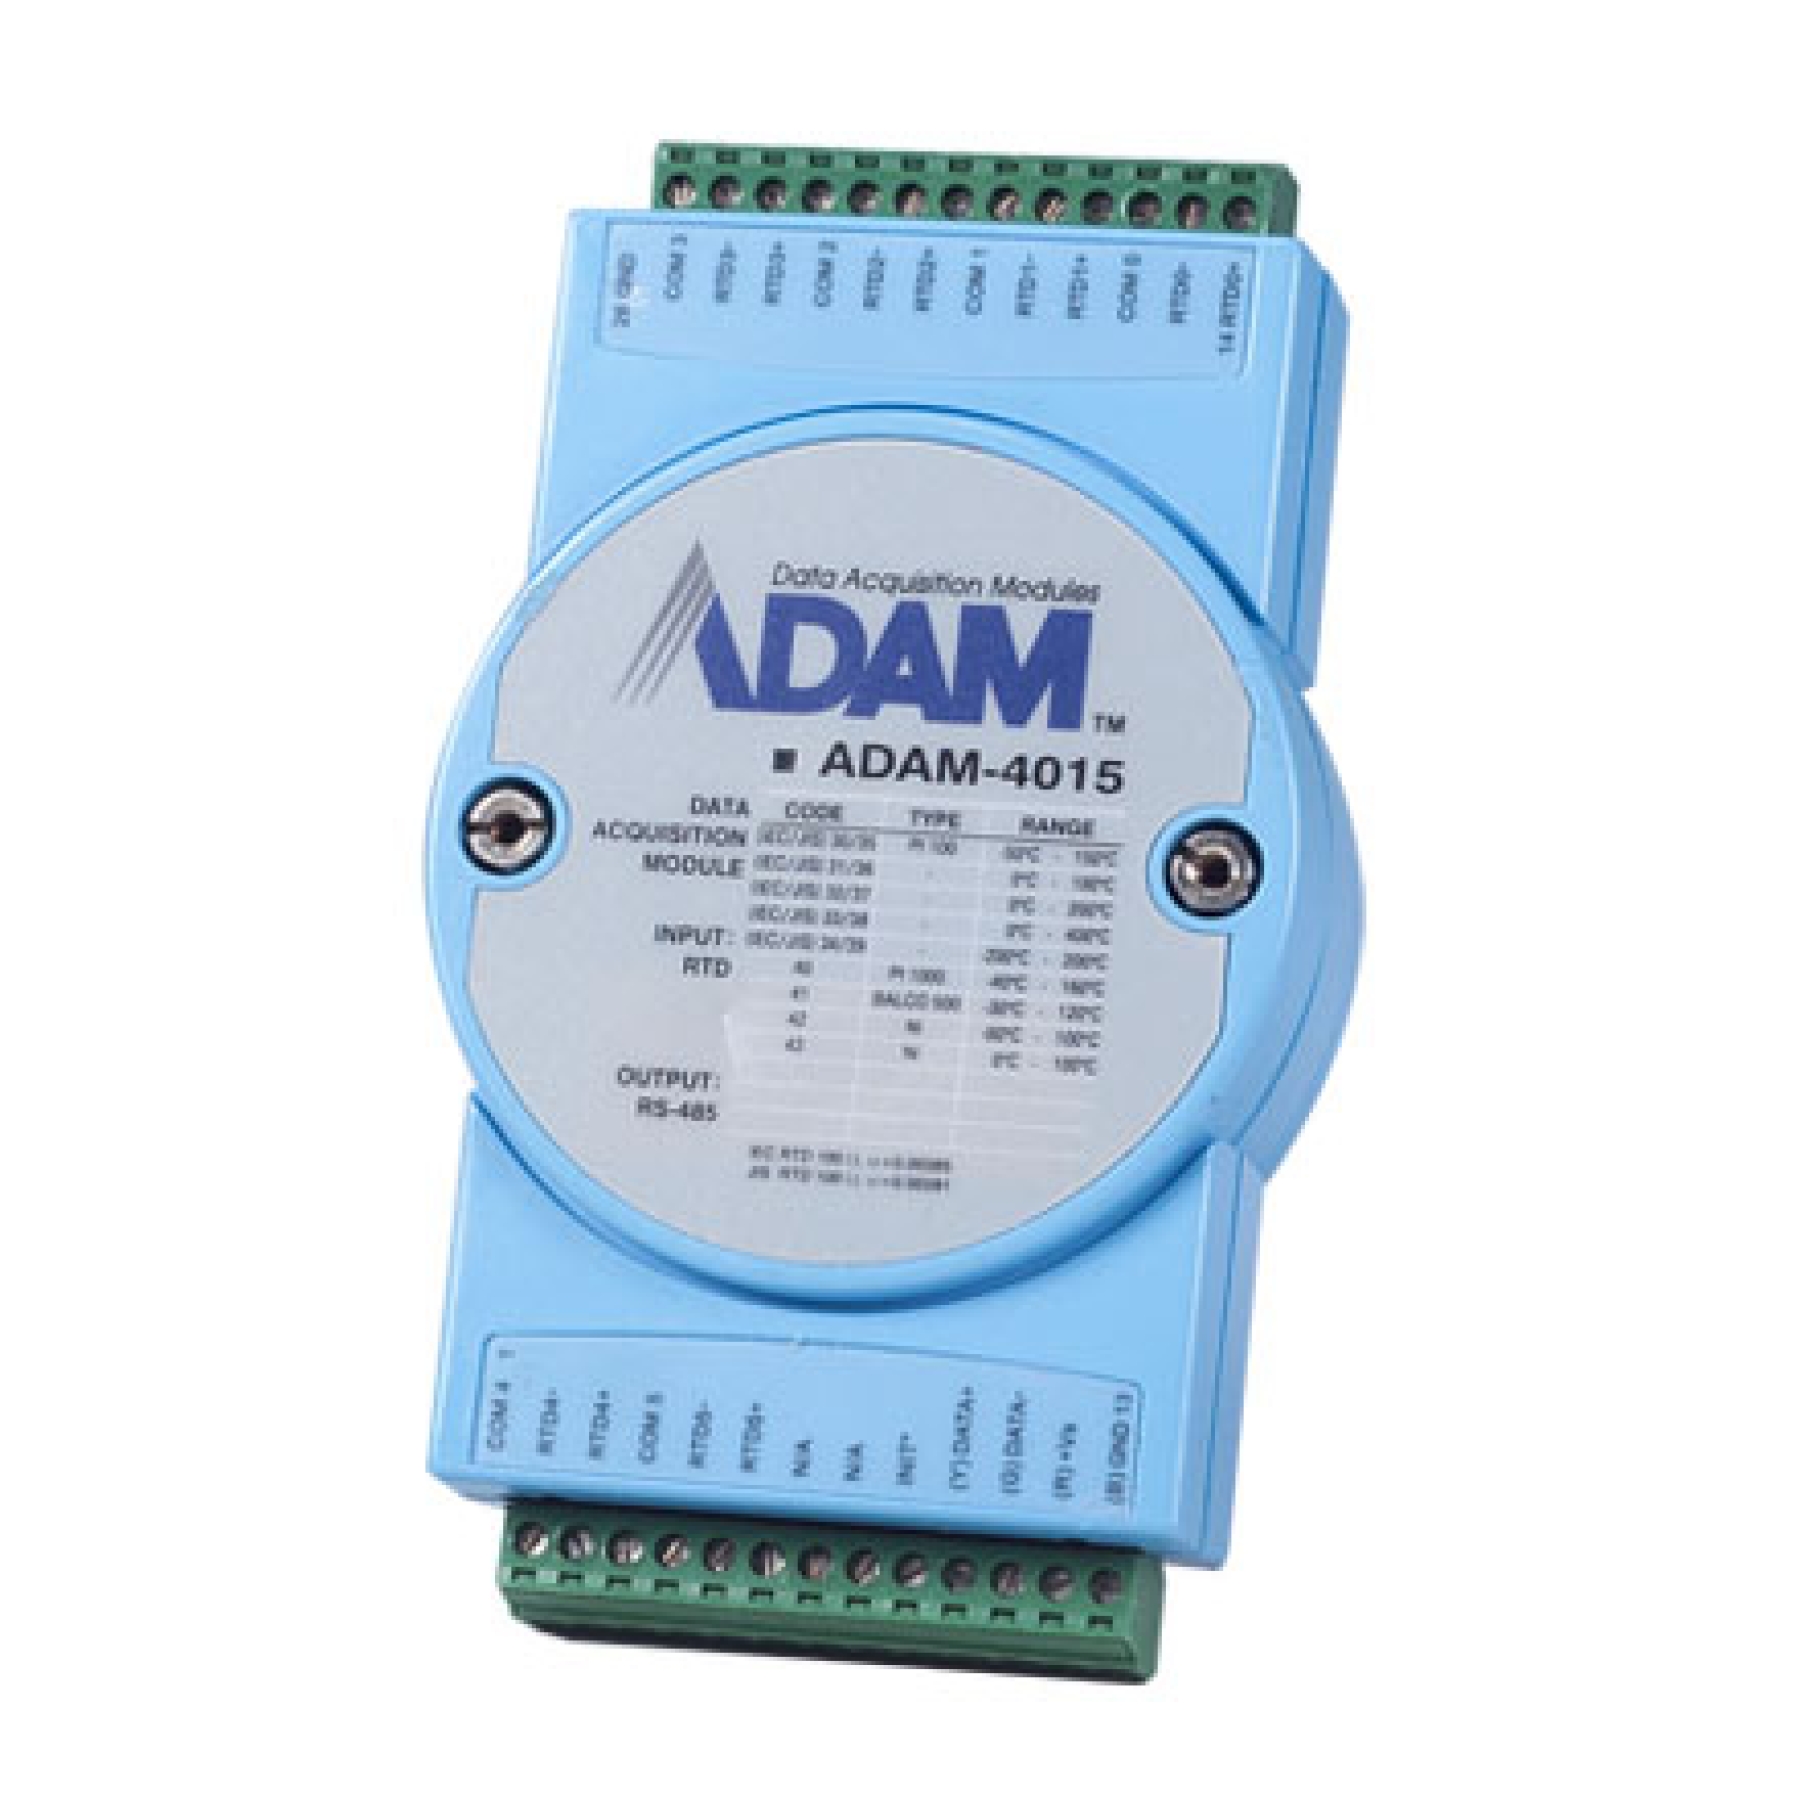 Advantech ADAM-4015 | Official Advantech Distributor and Integrator